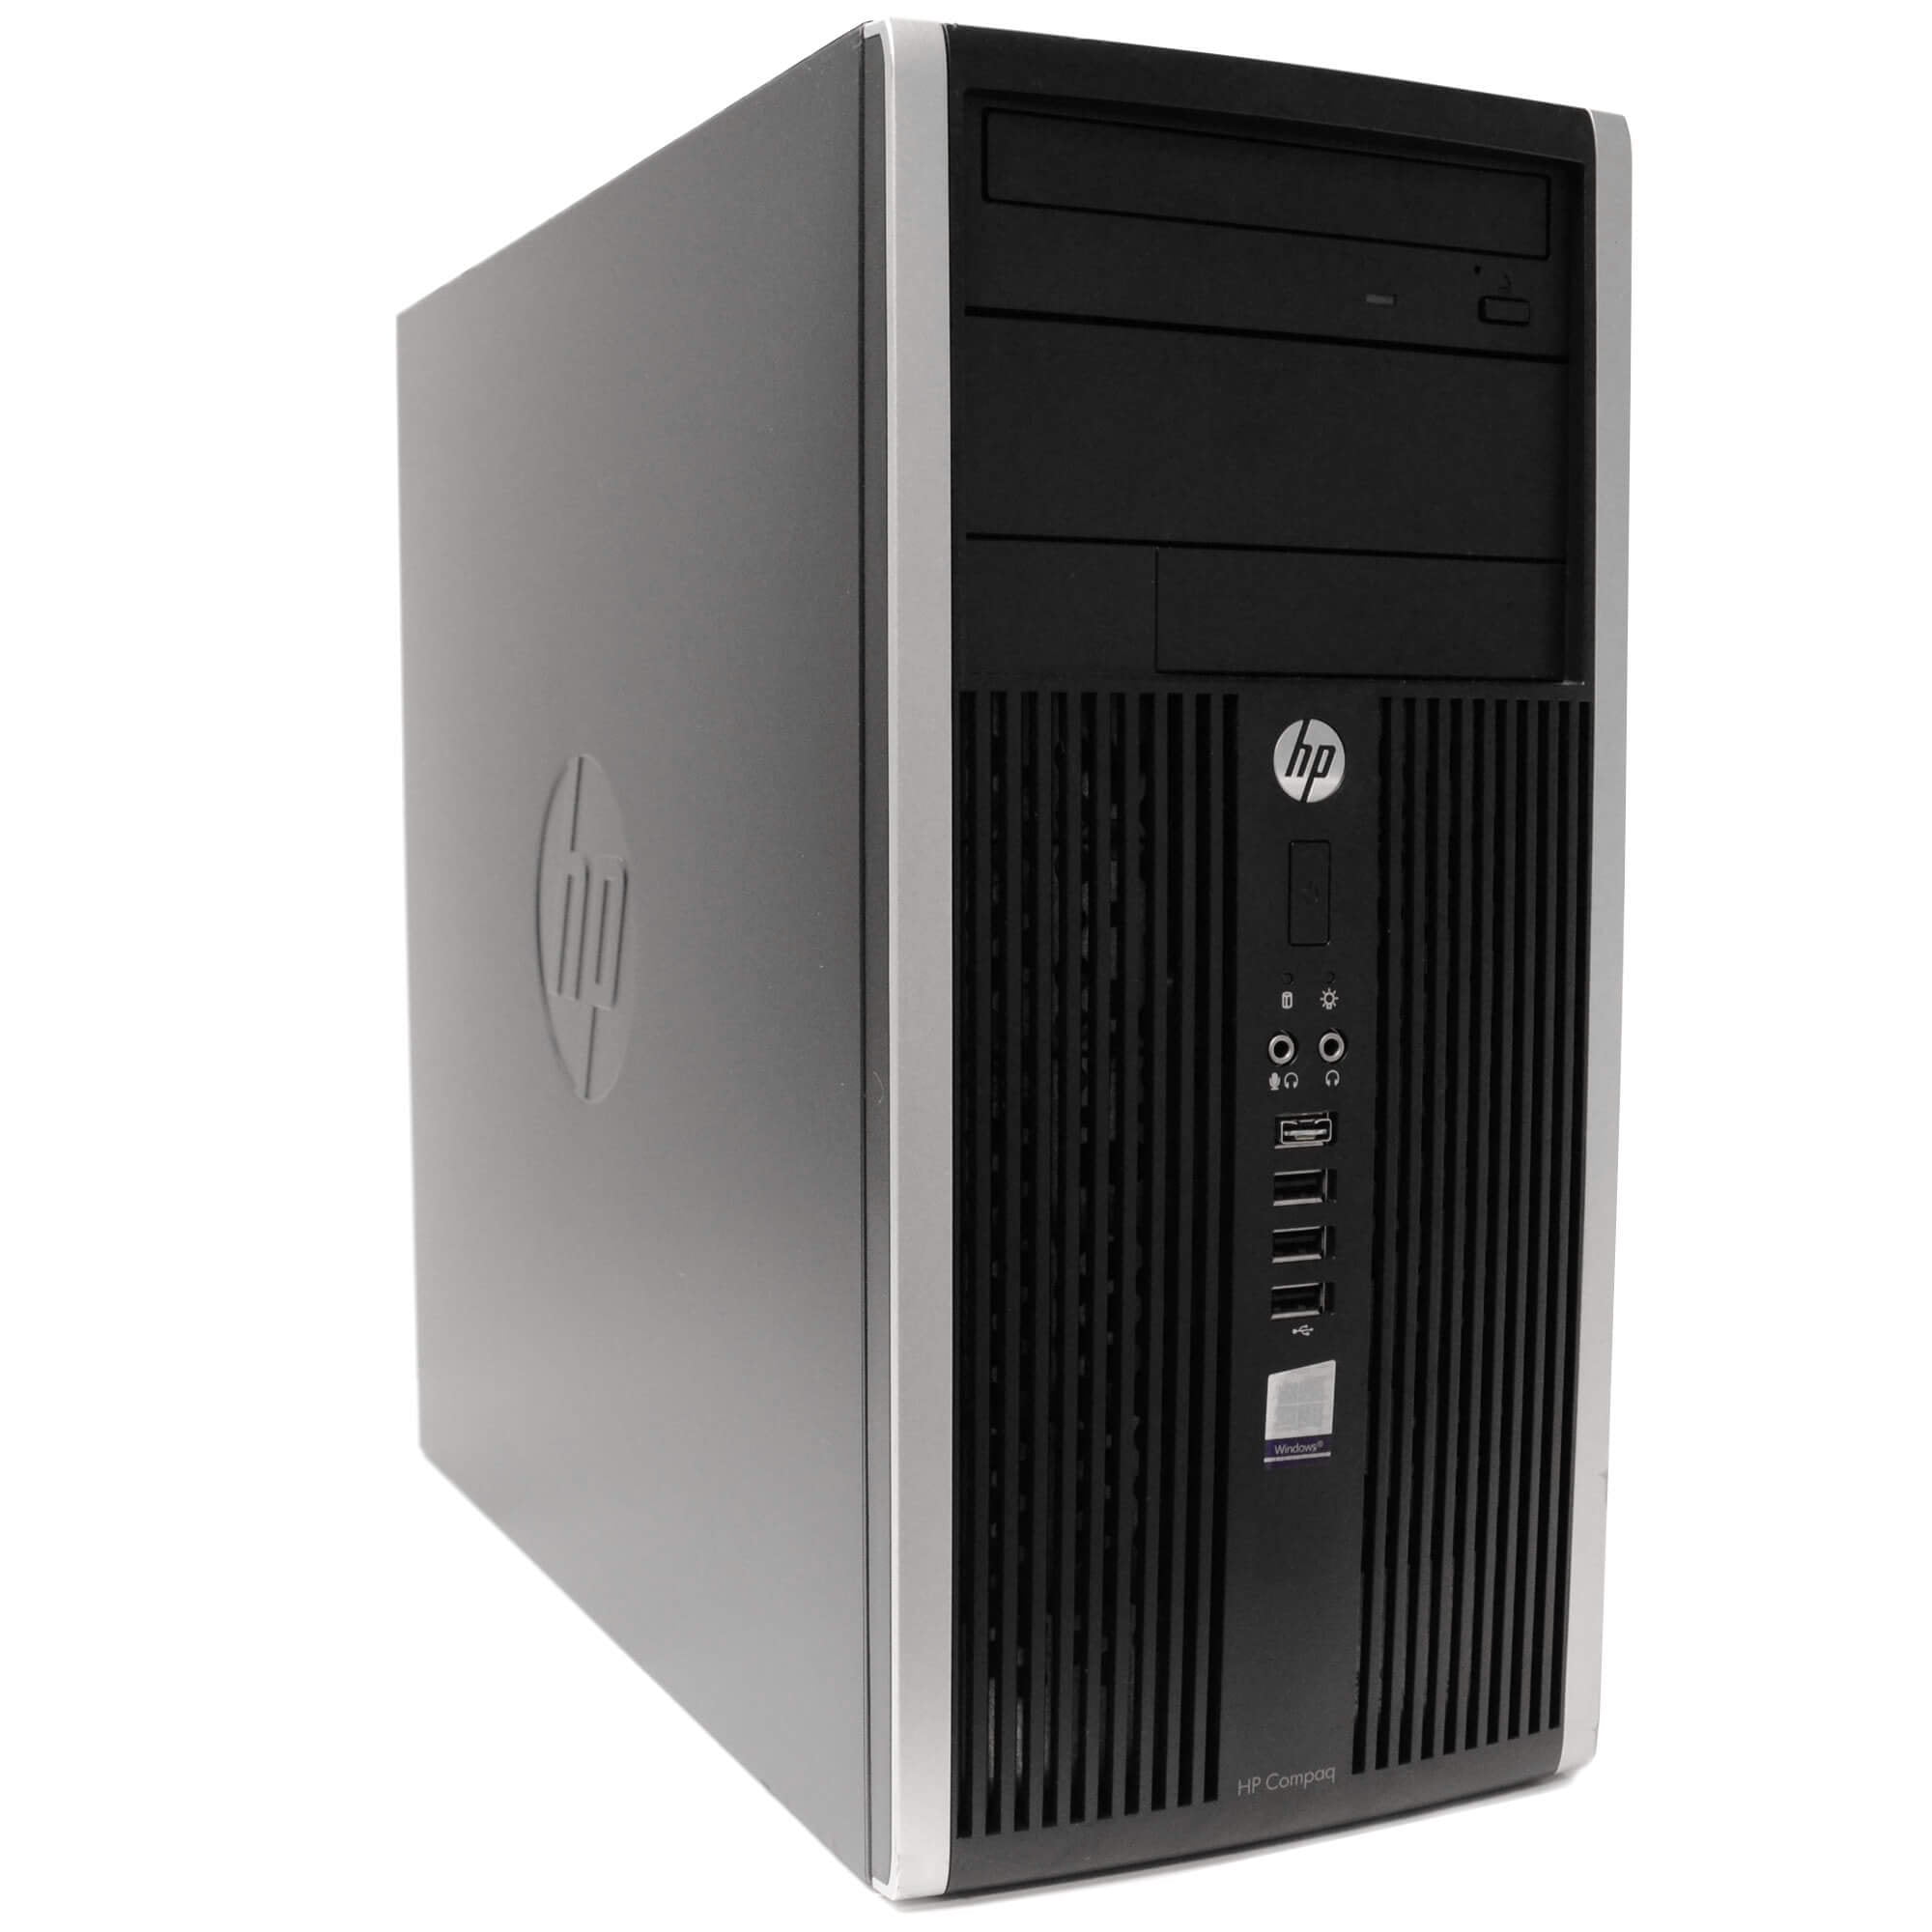 HP Compaq 6200 Tower Computer PC, 3.20 GHz Intel i5 Quad Core Gen 2